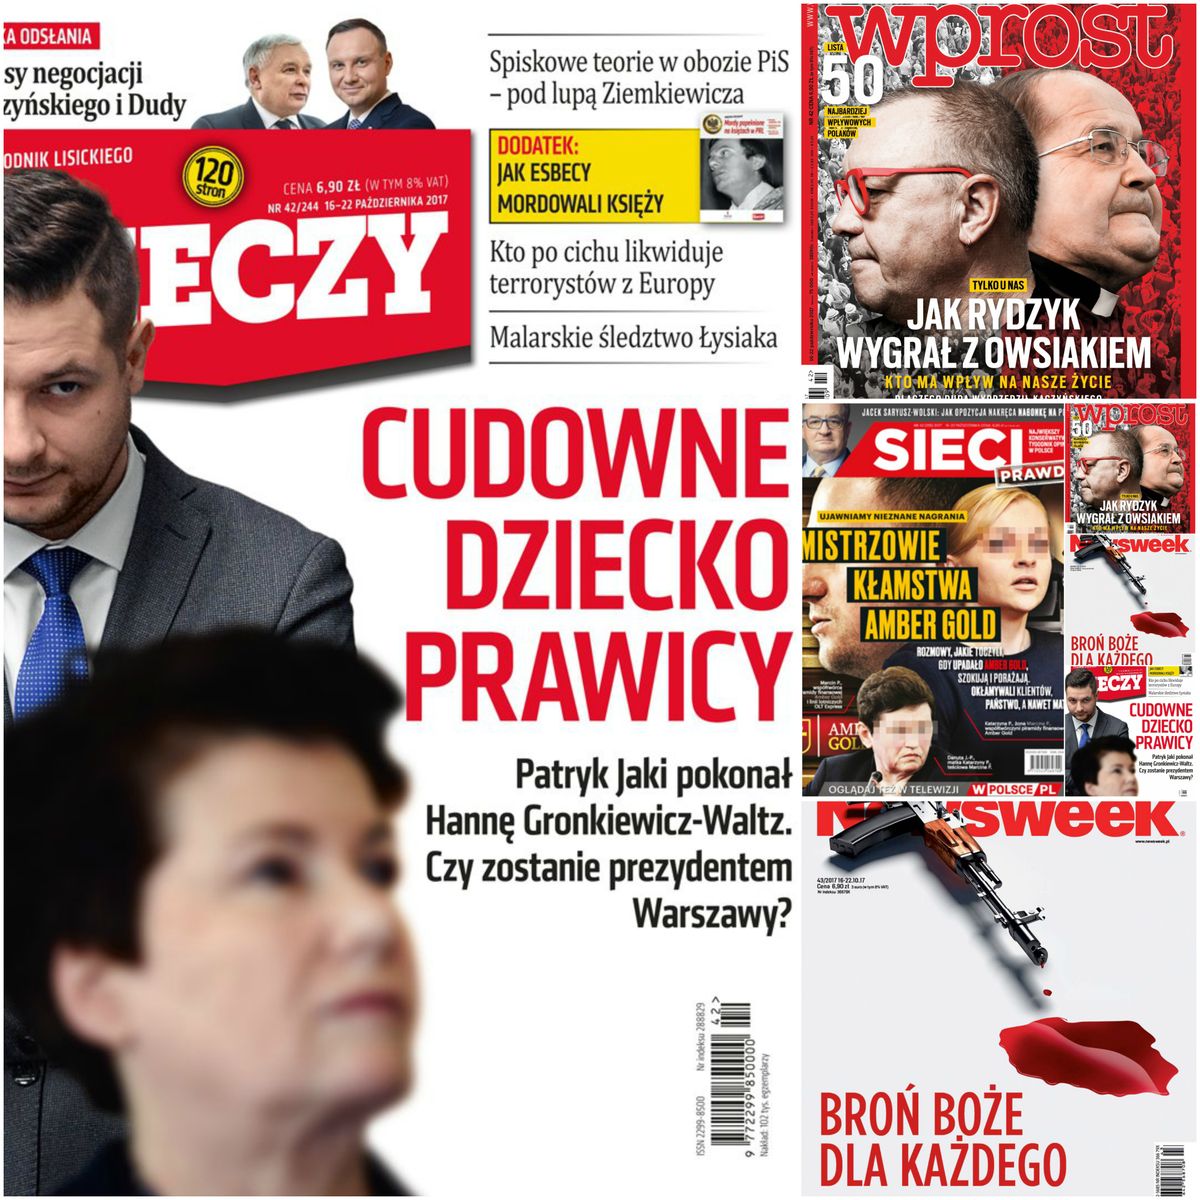 Nowy prezydent, nieznane stenogramy, dwie Polski - mocne okładki polskich tygodników